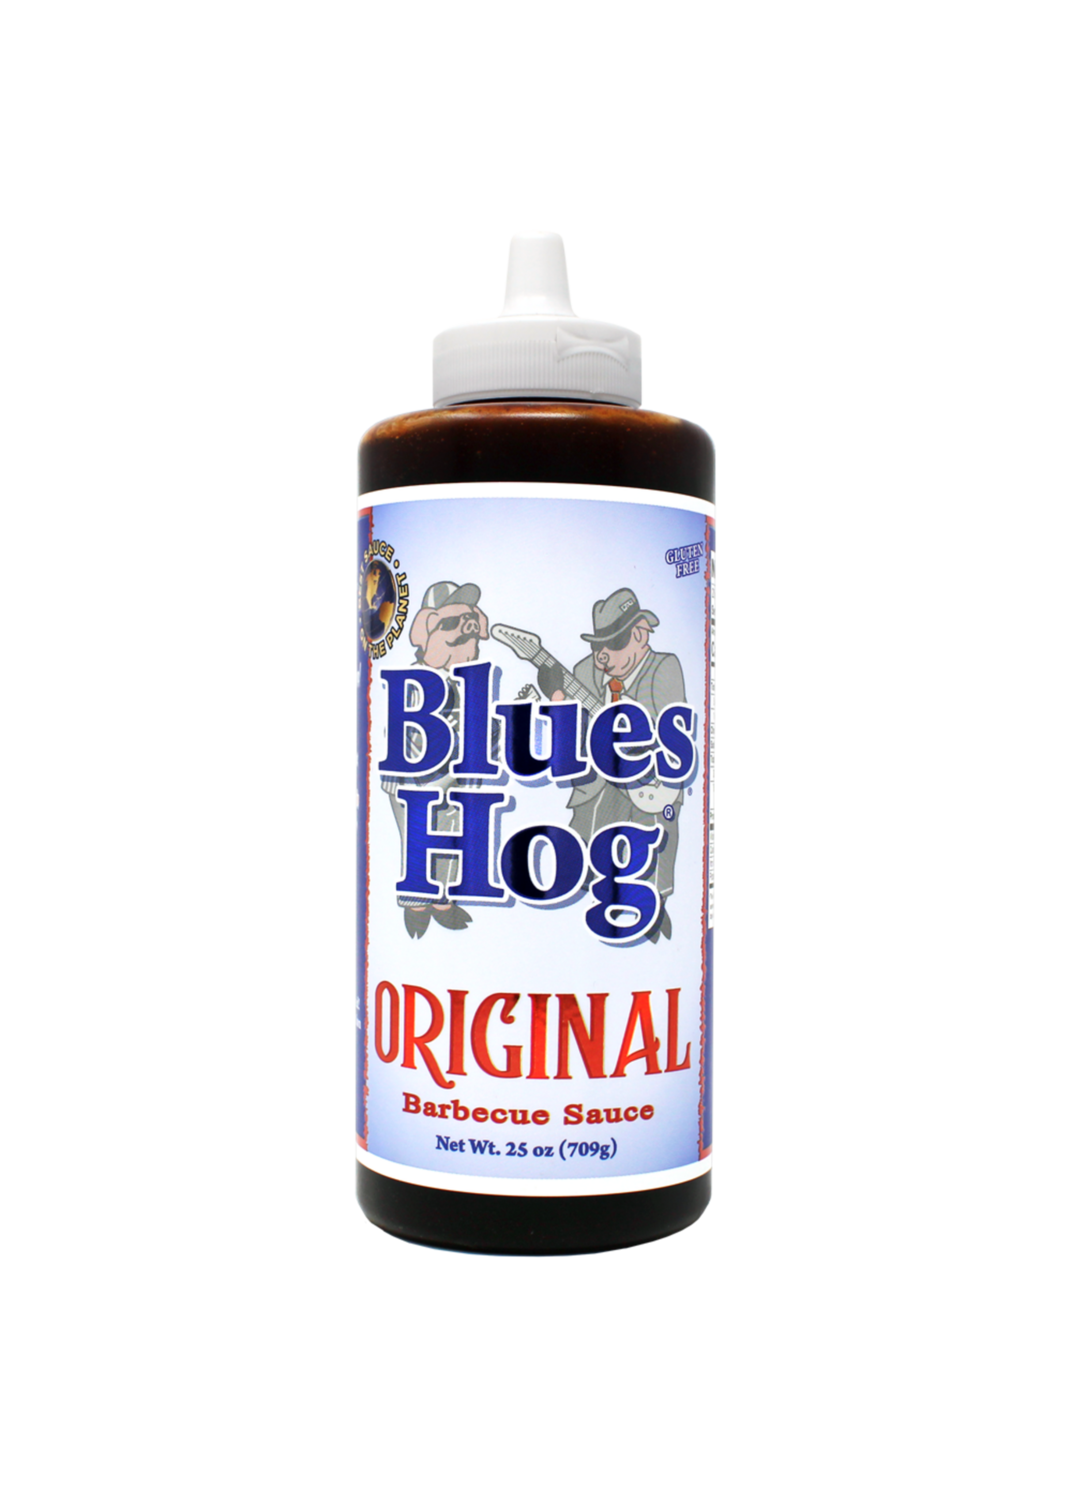 Blues hog Original - squeeze bottle